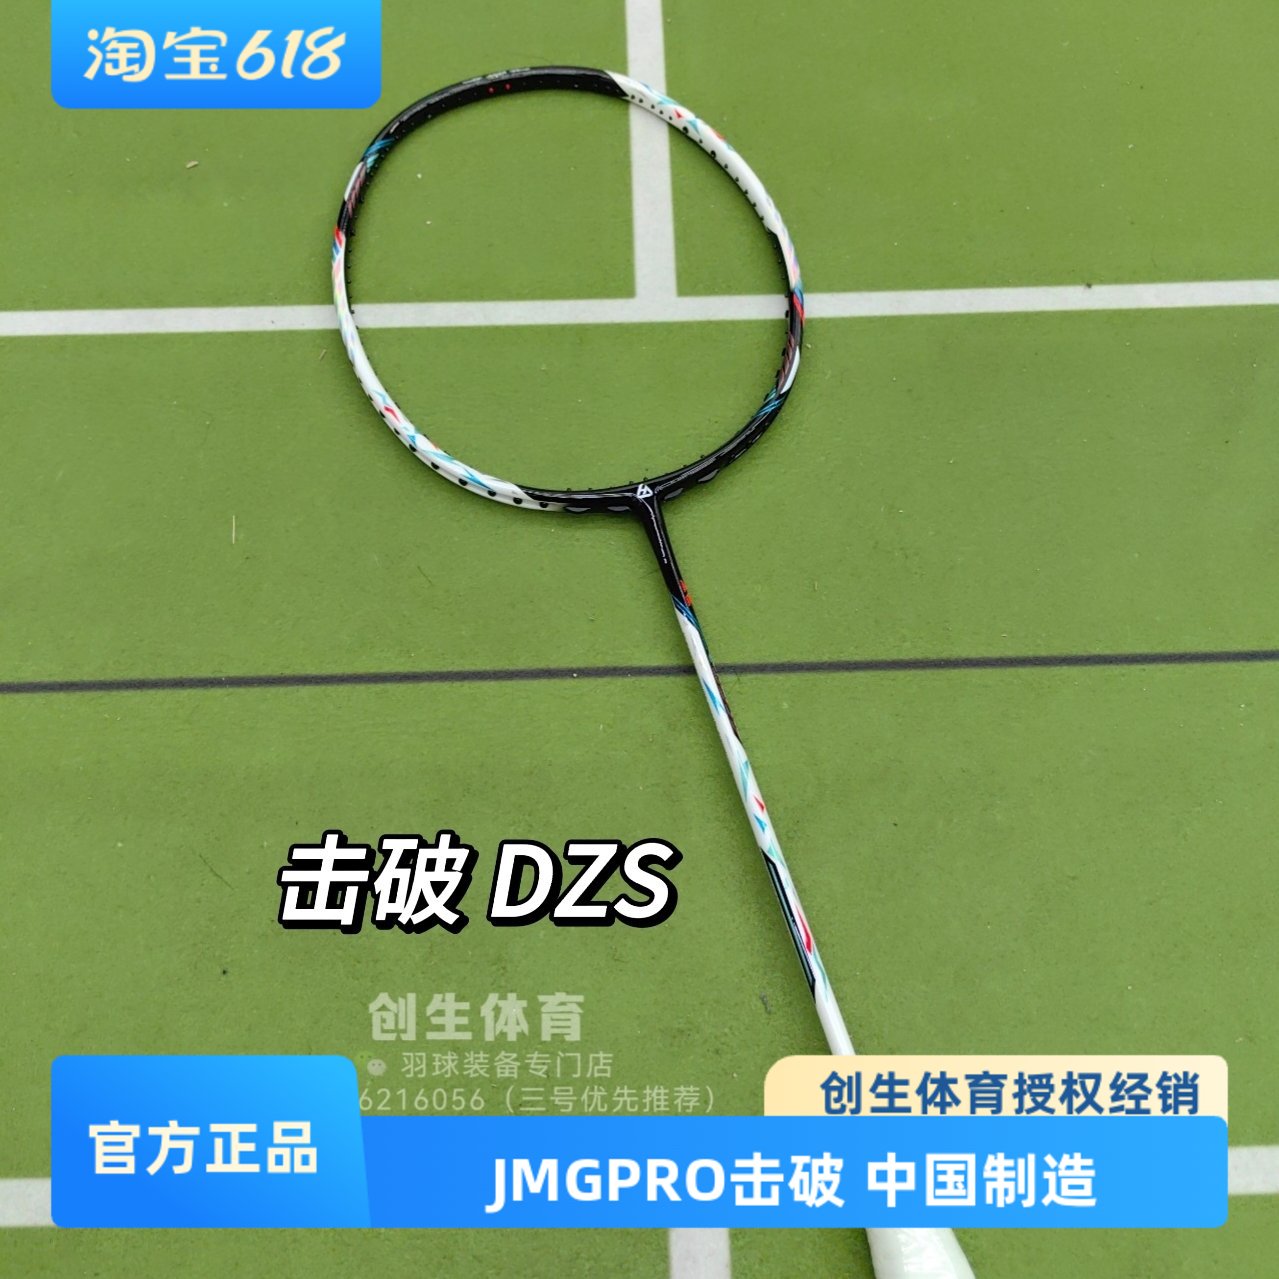 【创生体育】JMGPRO击破 DZS 99LTD NF700 碳纤维高端羽毛球拍 运动/瑜伽/健身/球迷用品 羽毛球拍 原图主图